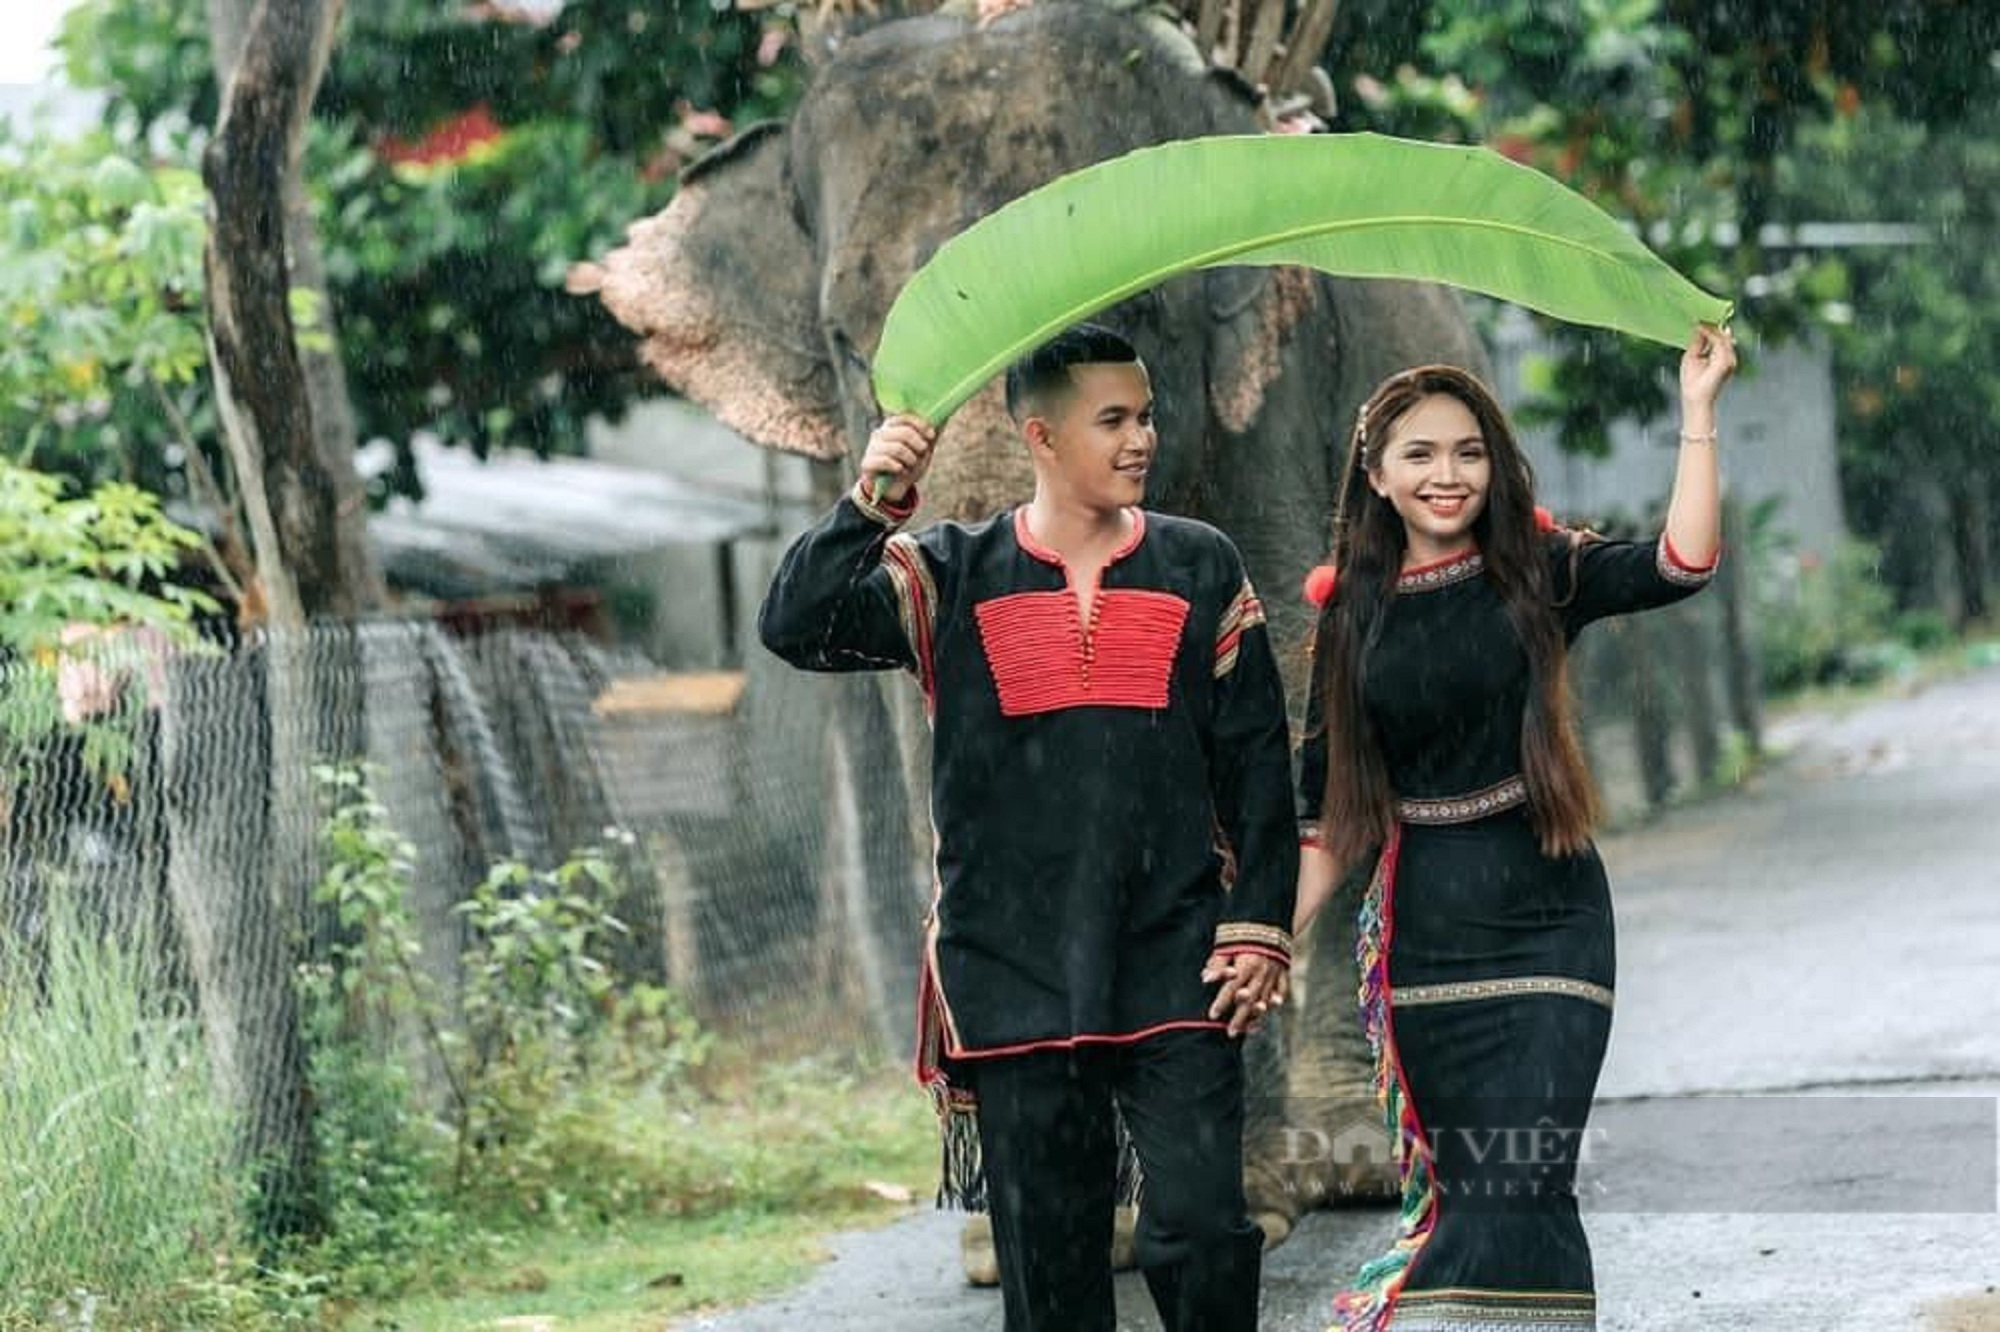 Trang phục truyền thống của dân tộc Việt Nam vô cùng đa dạng và đẹp mắt, có sức hút riêng đối với người xem. Bộ ảnh các loại trang phục truyền thống sẽ giúp bạn khám phá và hiểu thêm về những giá trị văn hoá truyền thống của chúng ta.